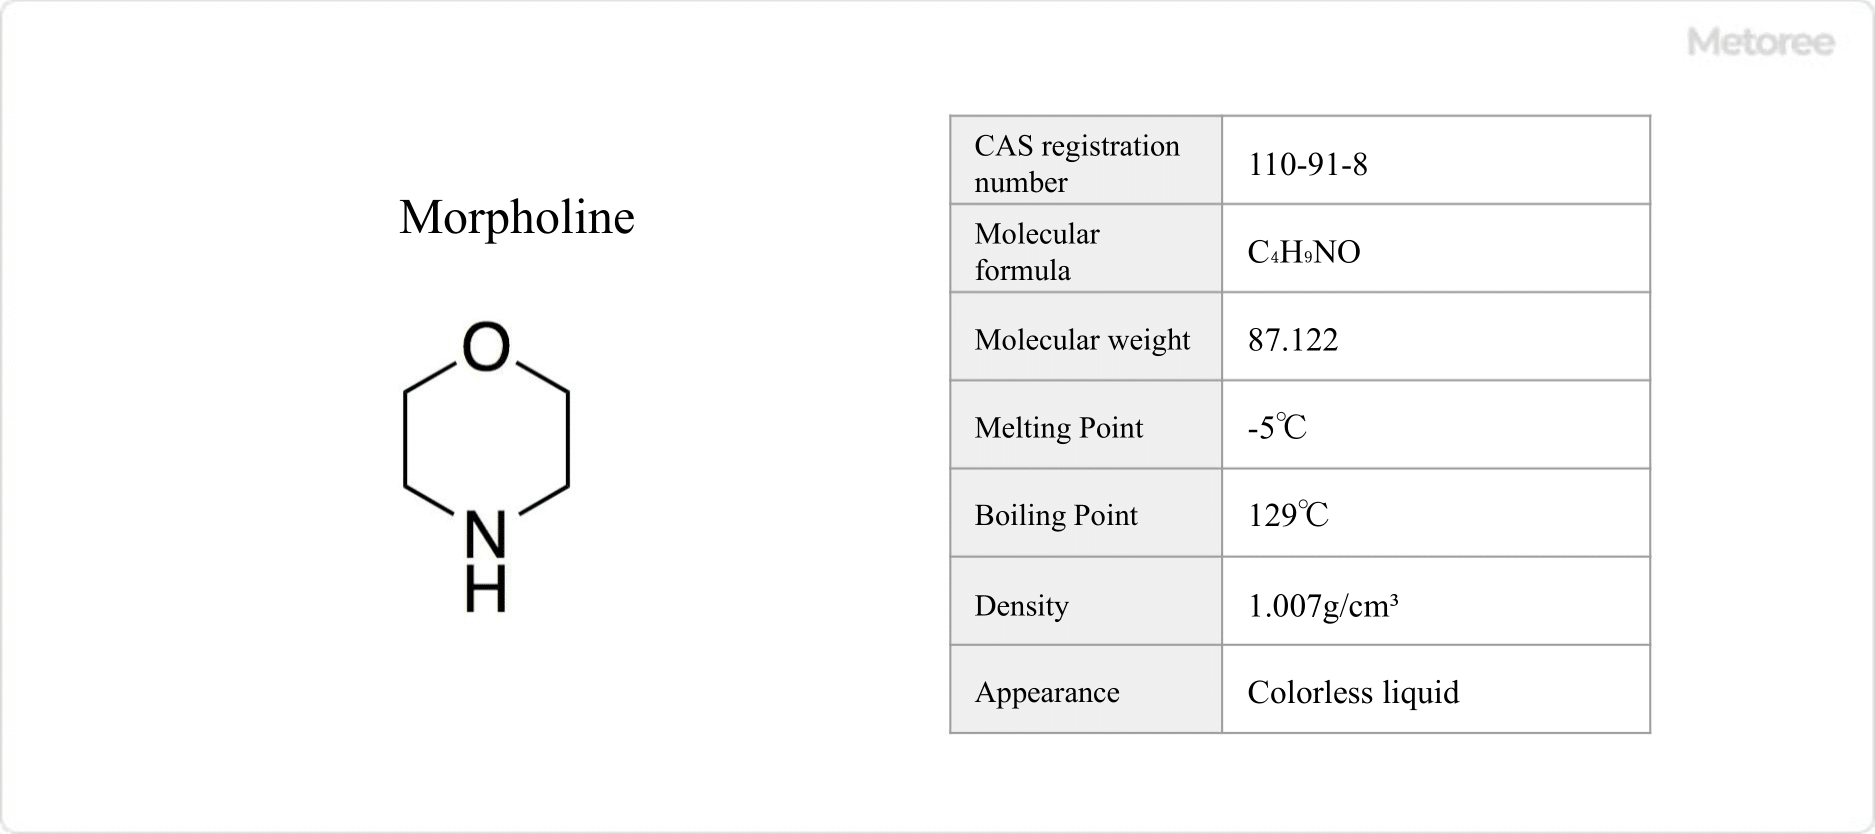 Figure 1. Basic information on morpholine